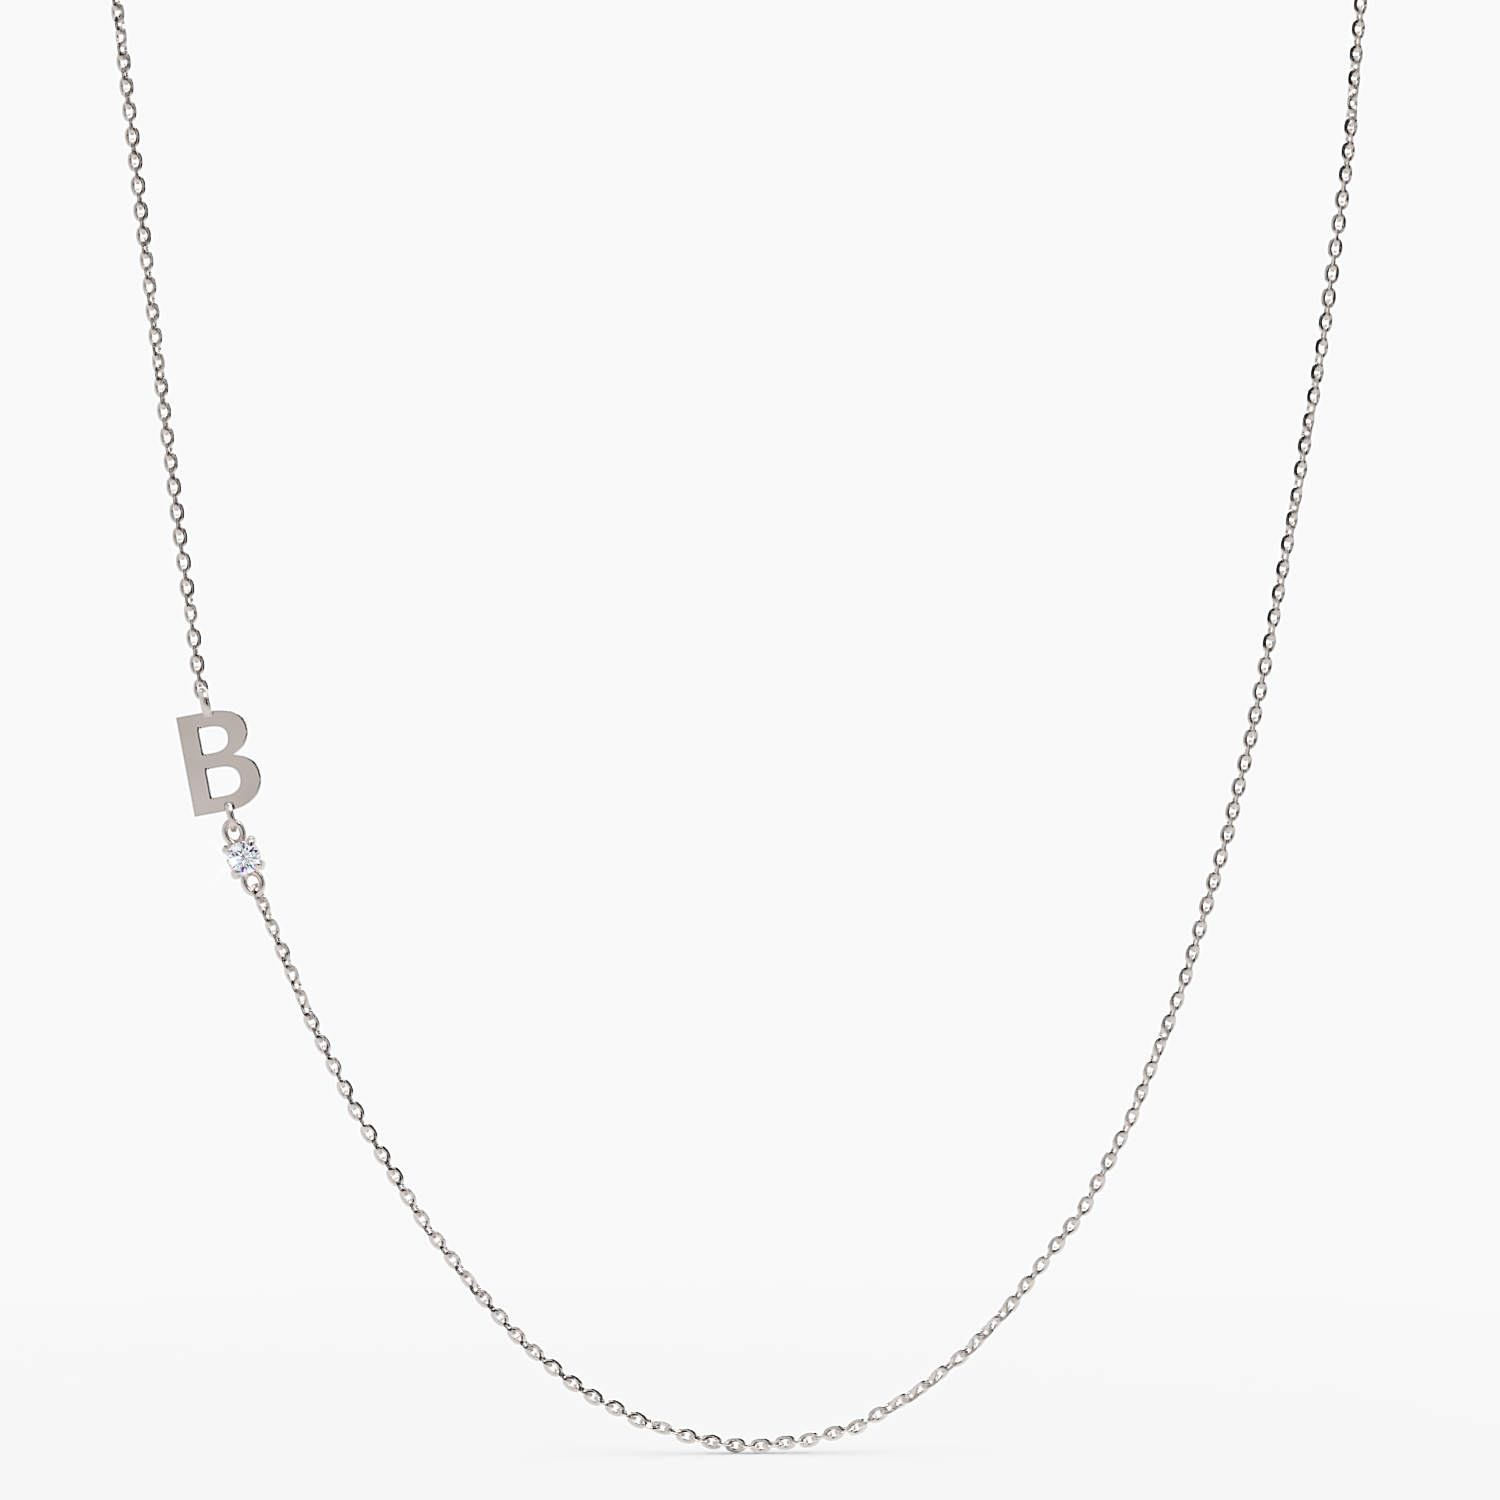 Sideways Initial B Necklace with Diamond